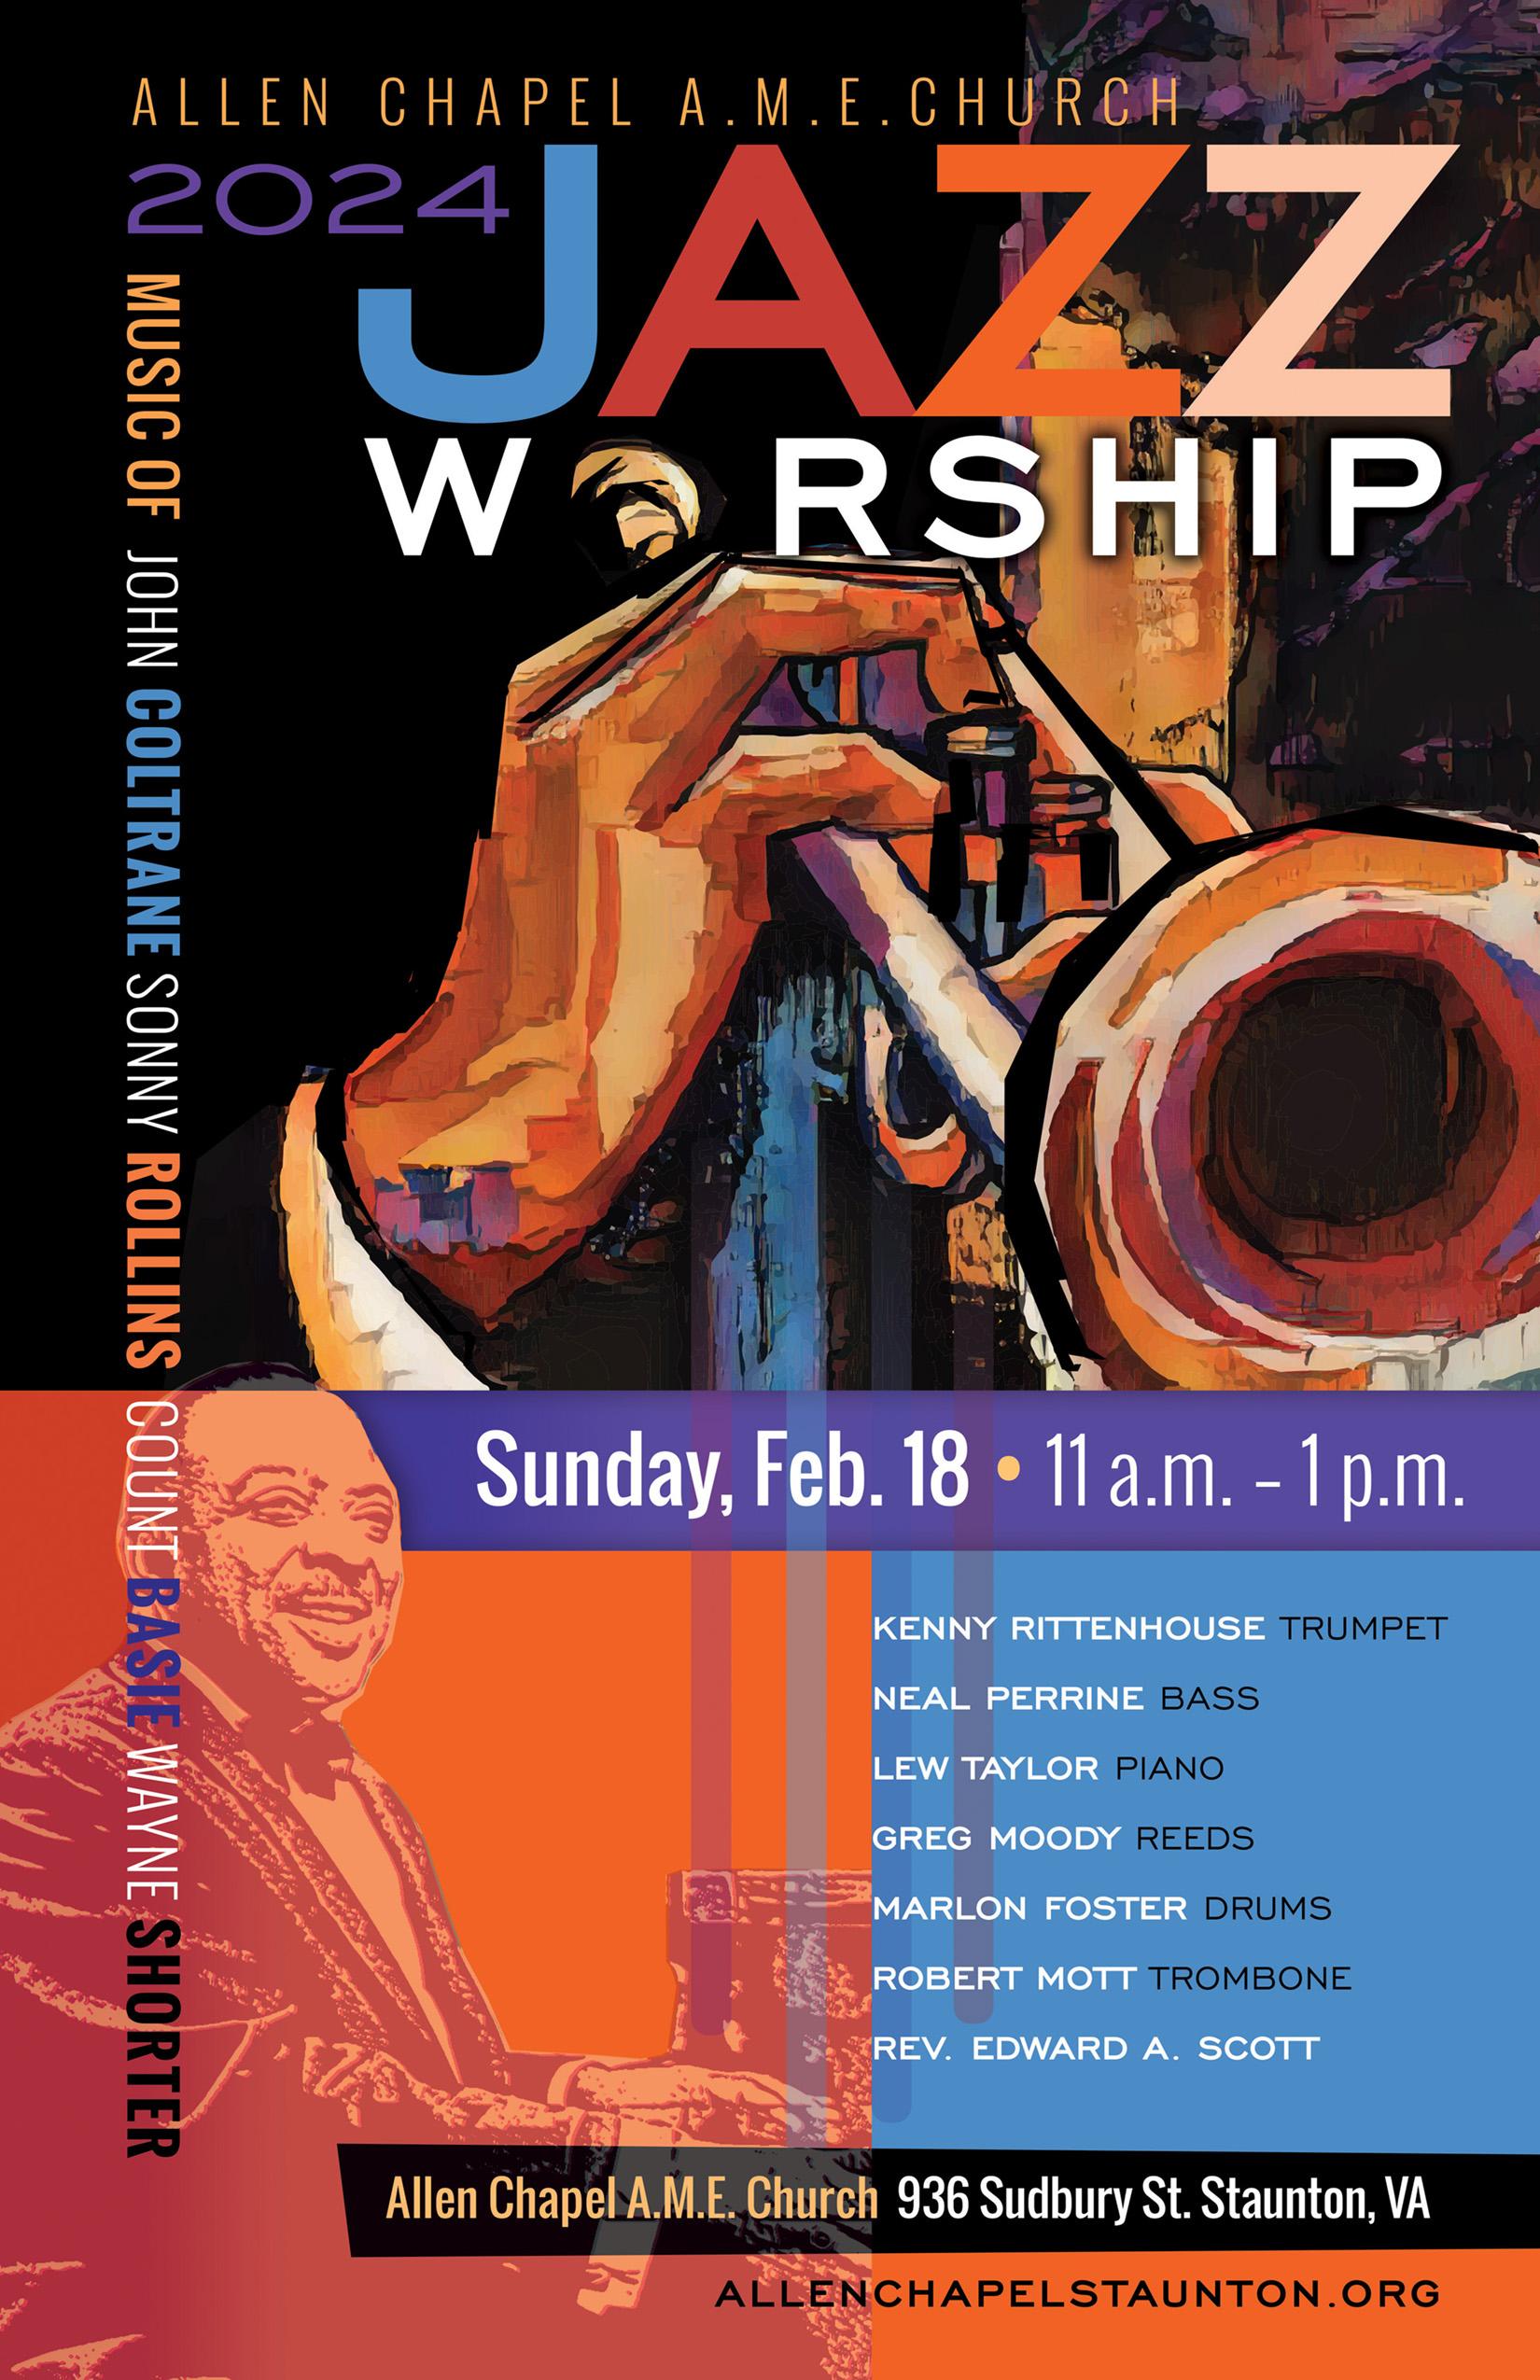 Allen Chapel Jazz Worship on Sunday, Feb. 18, 2024 in Staunton, Virginia.